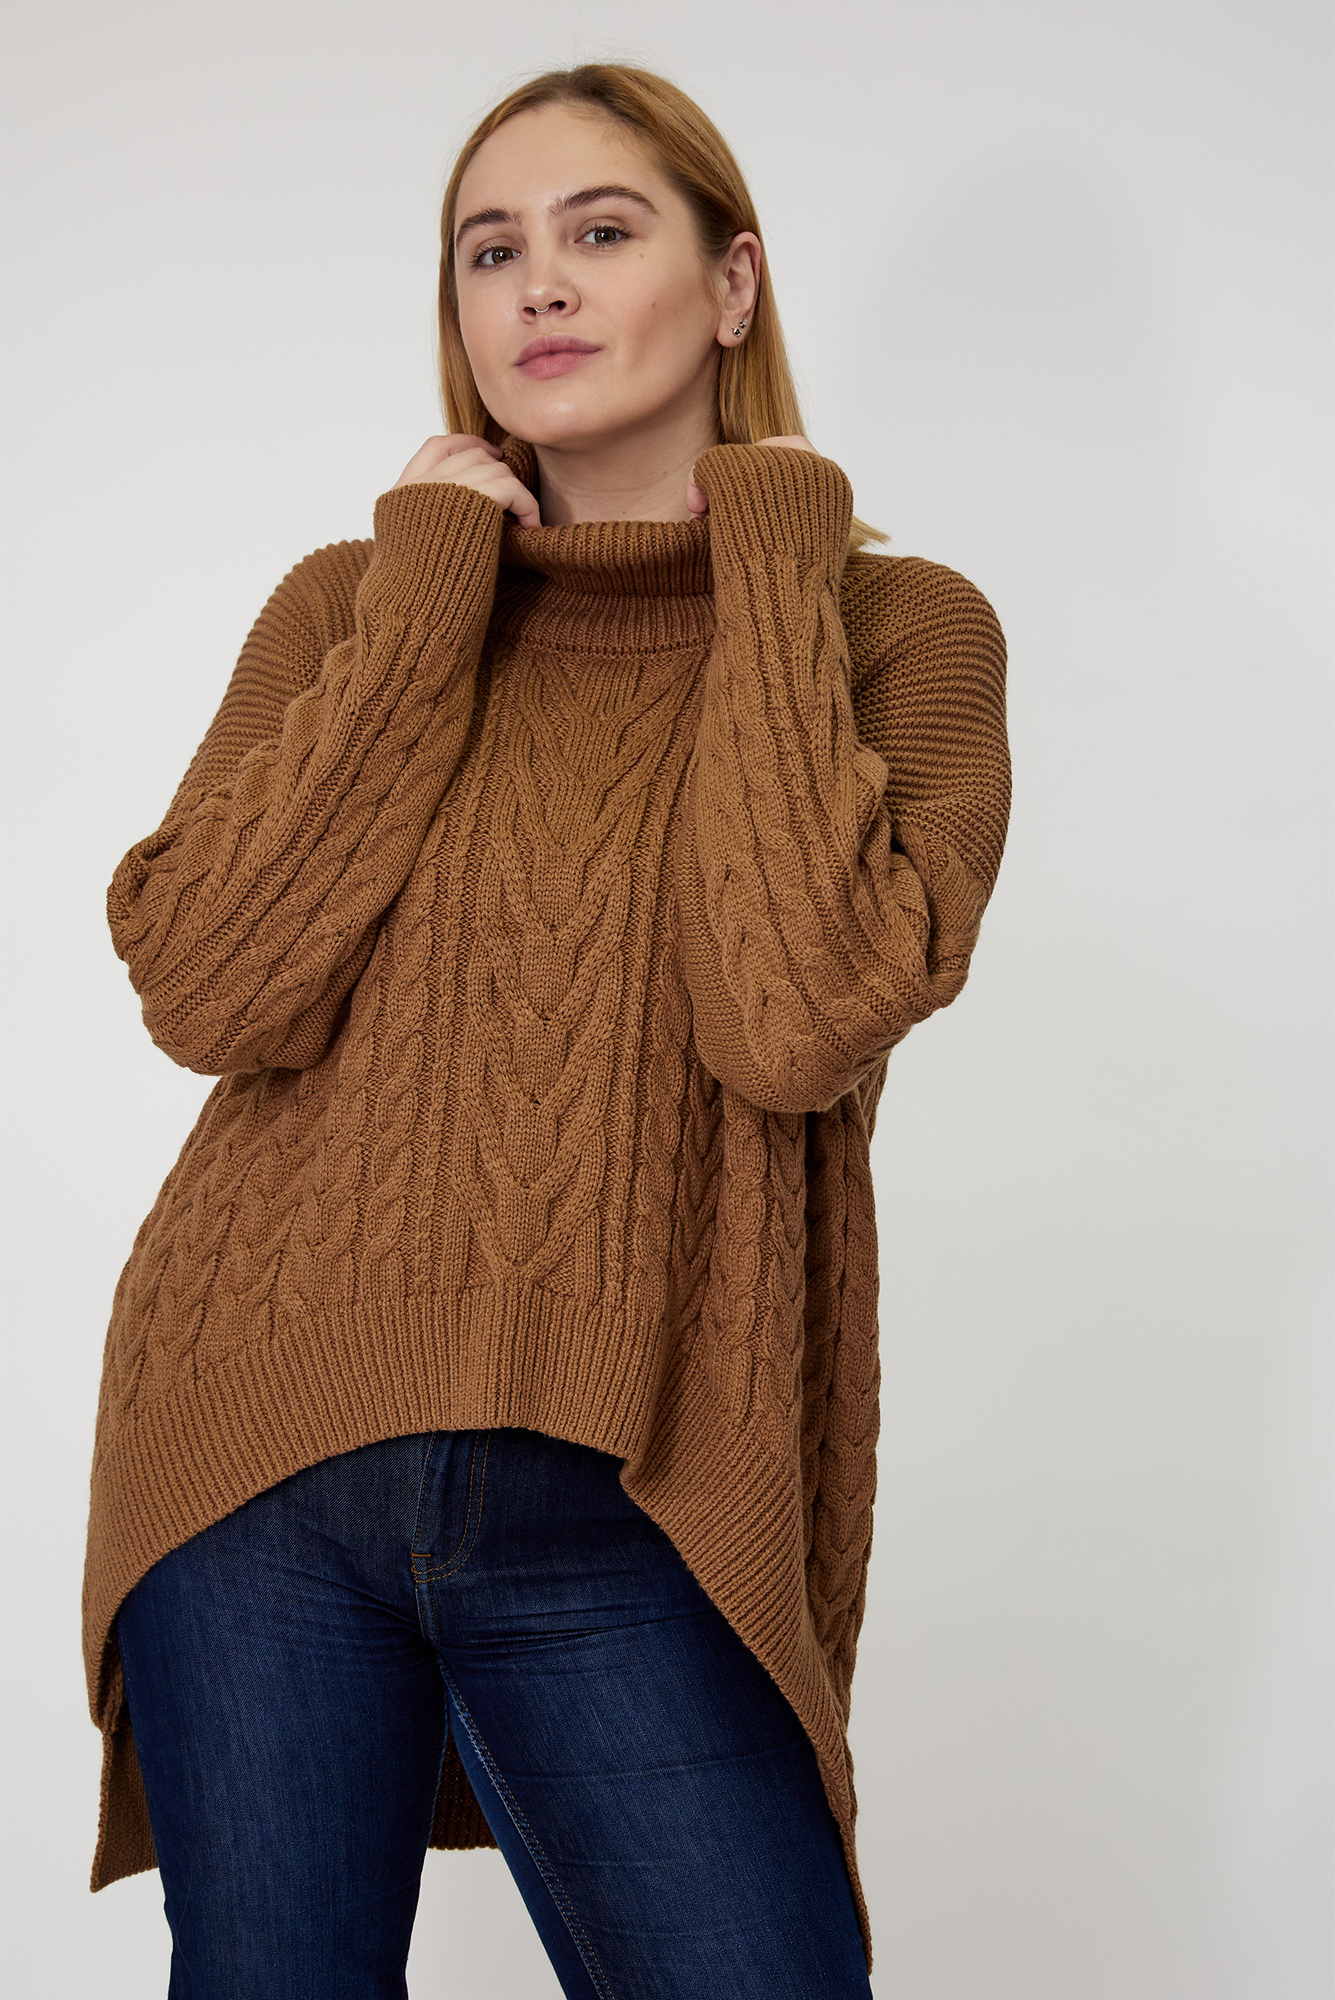 модный свитер осень зима 2021 2022 косы объем украинский бренд коричневый бежевый